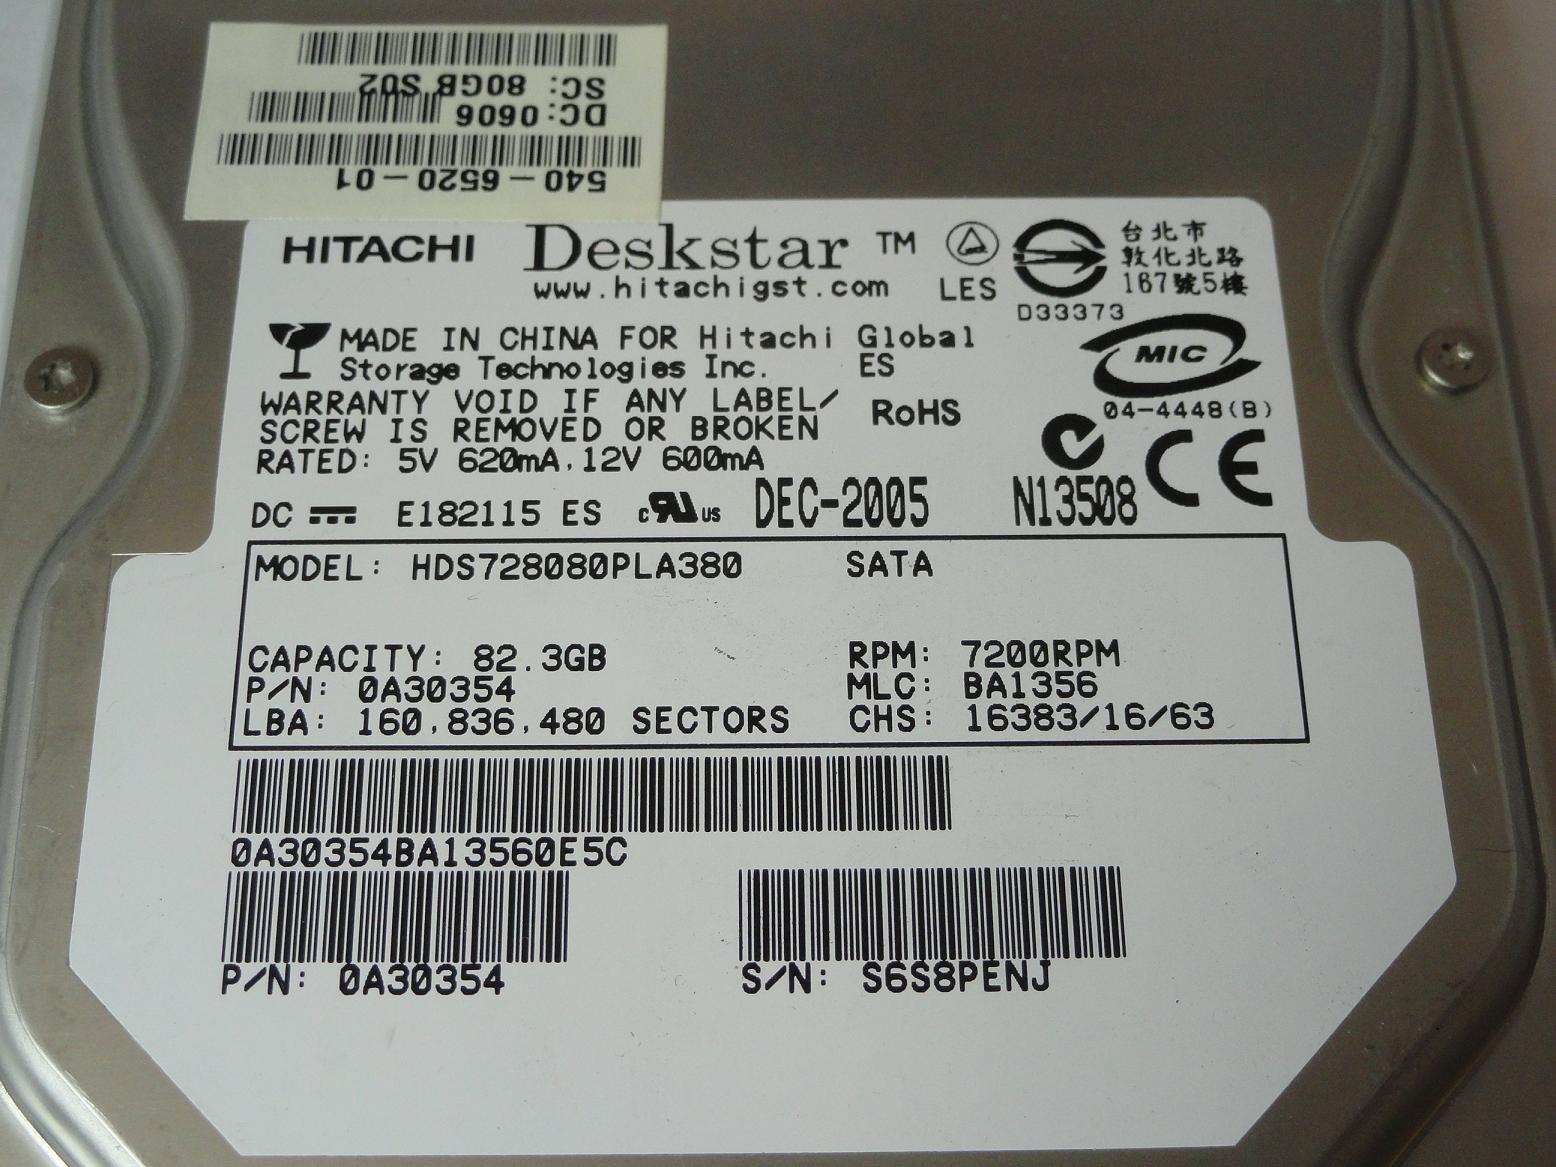 PR14053_0A30354_Hitachi Sun 80GB SATA 7200rpm 3.5in HDD in Tray - Image4